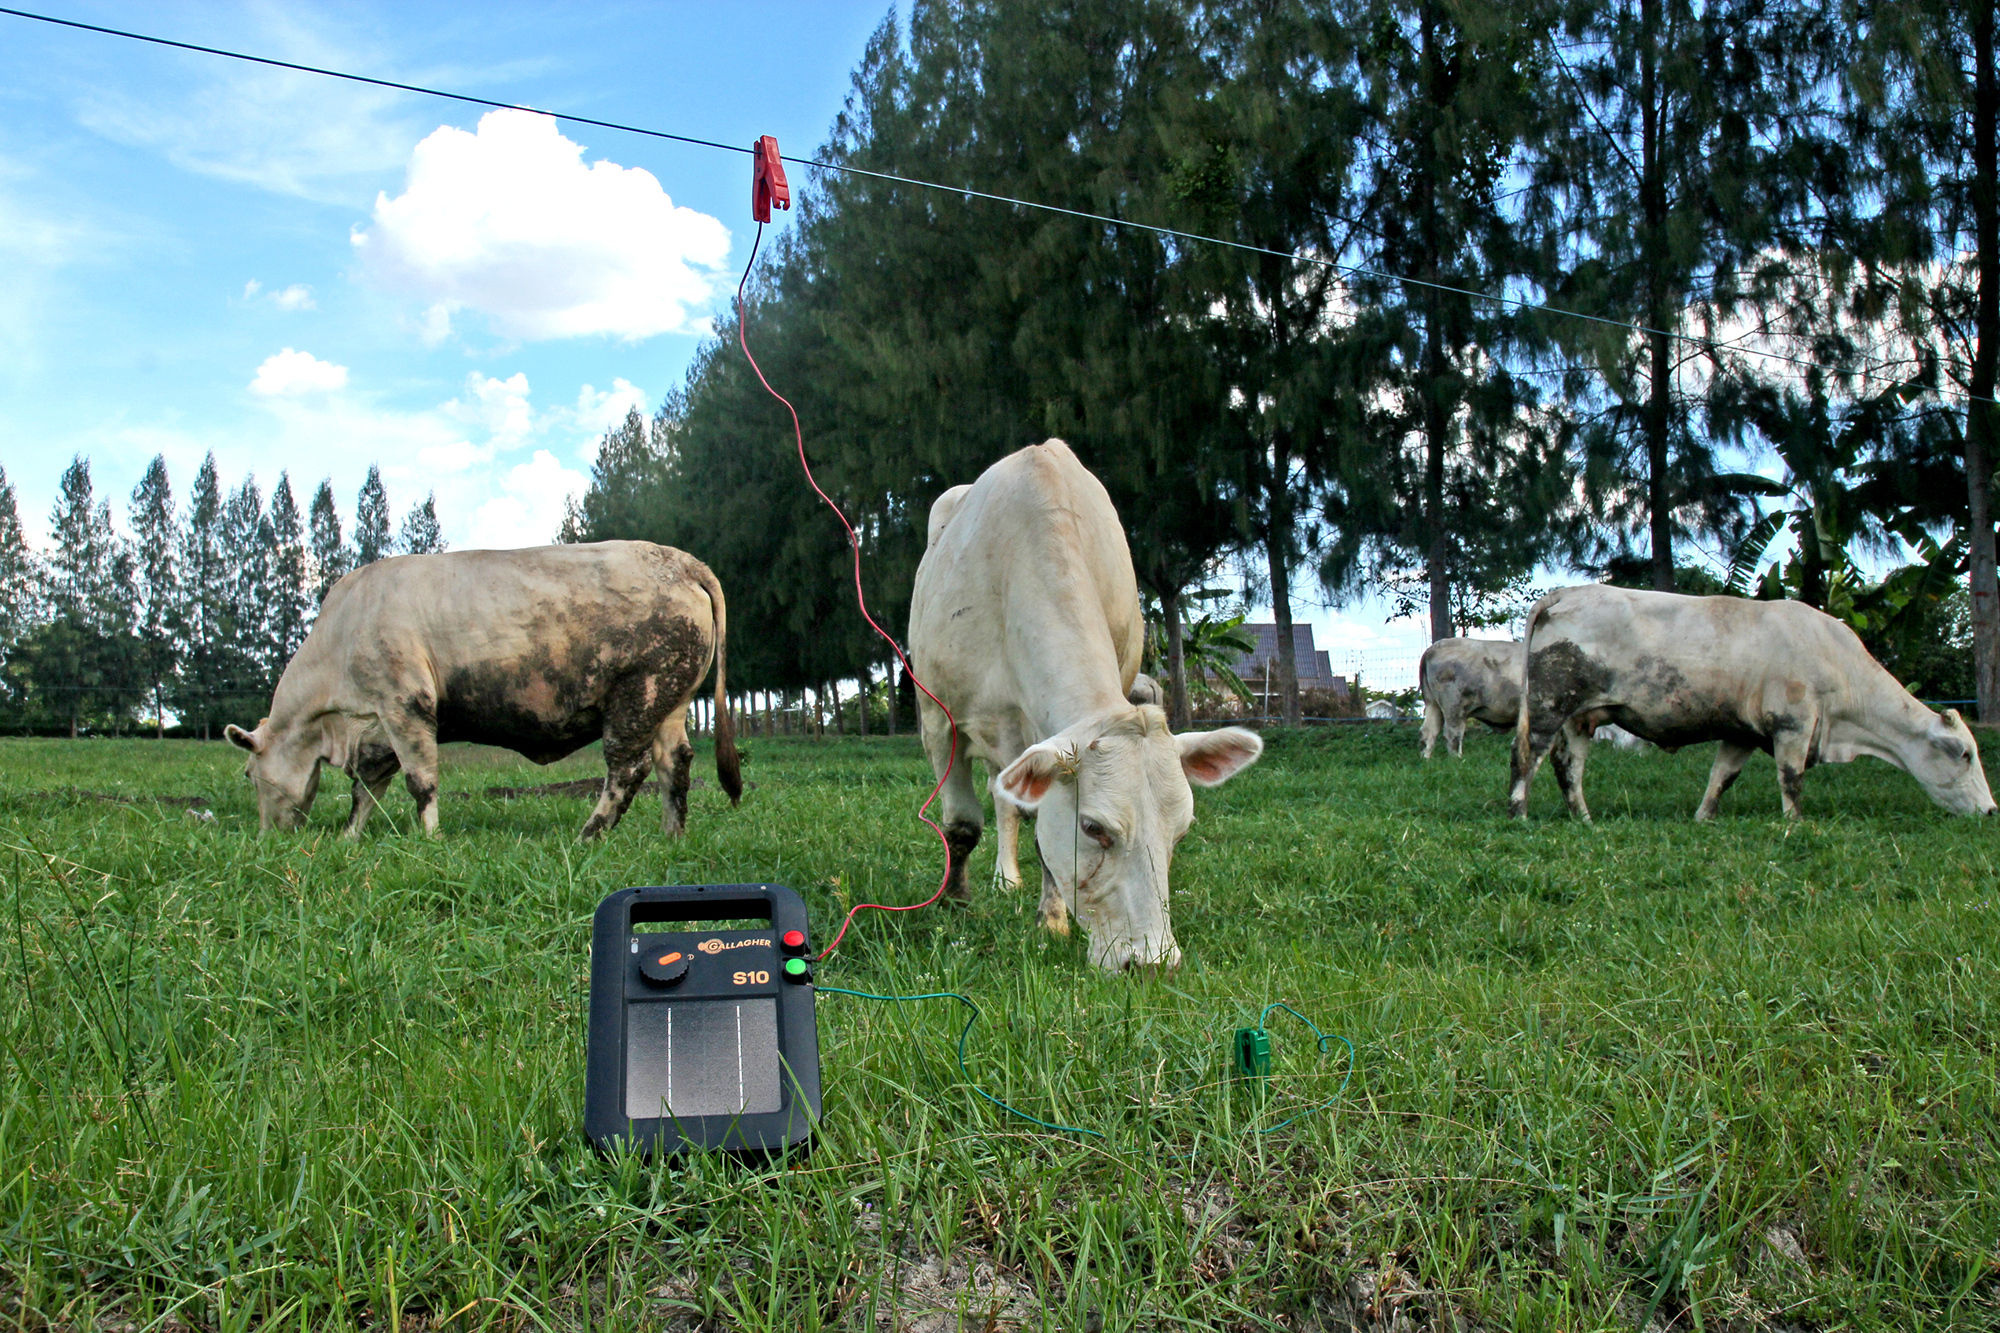 รั้วไฟฟ้าสำหรับวัว รั้วไฟฟ้าสำหรับโค รั้วโค รั้ววัว